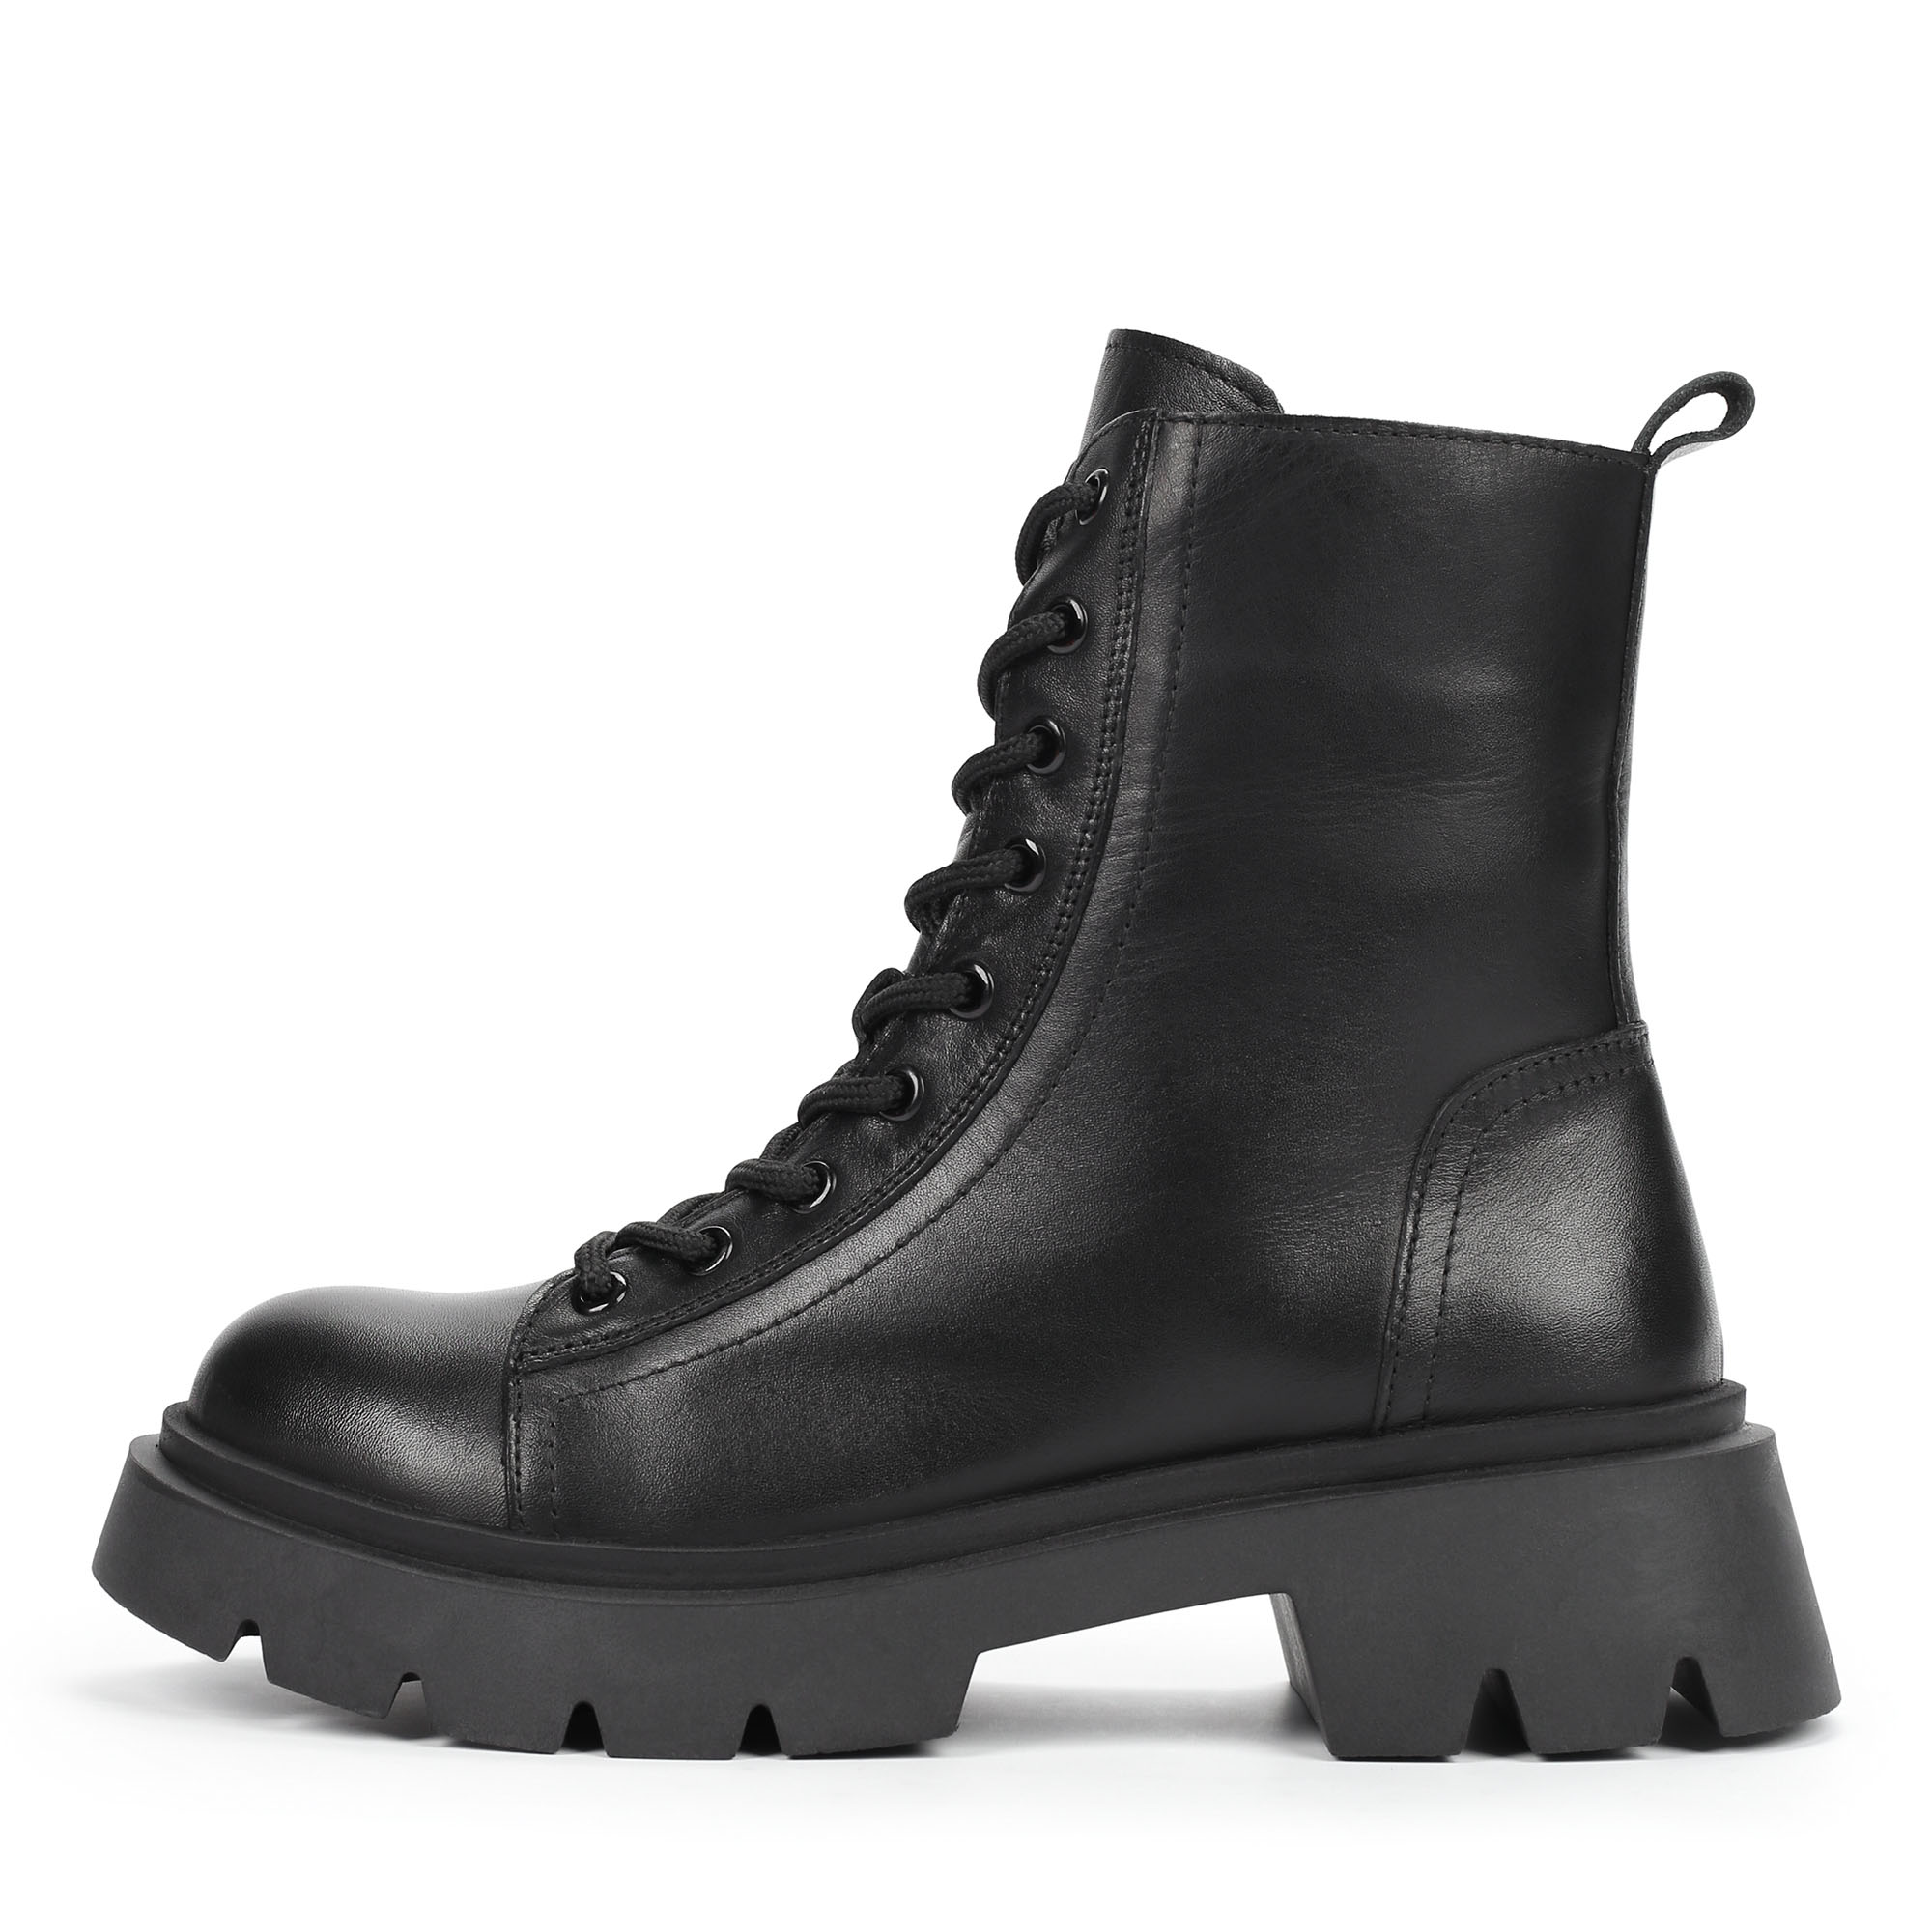 Ботинки Thomas Munz 555-006B-2102, цвет черный, размер 40